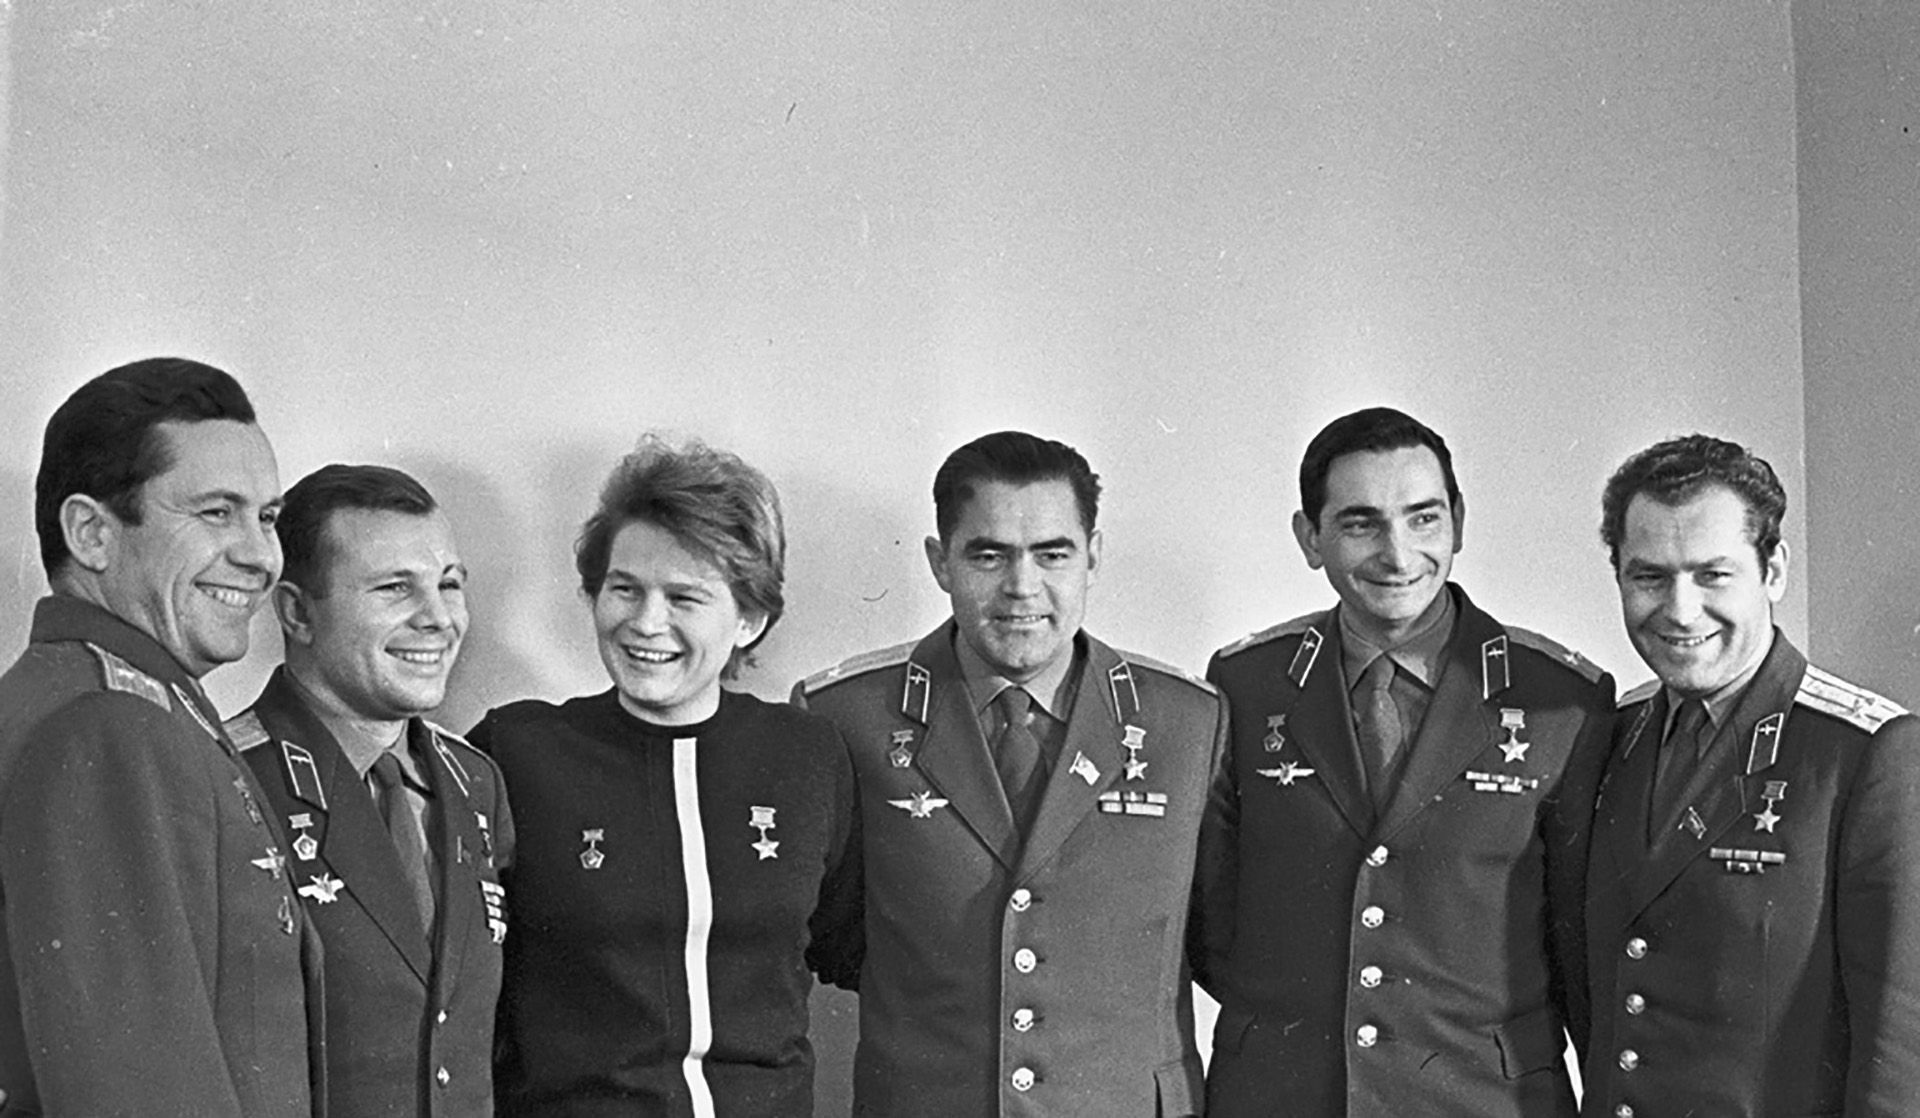 Космонавты советского времени